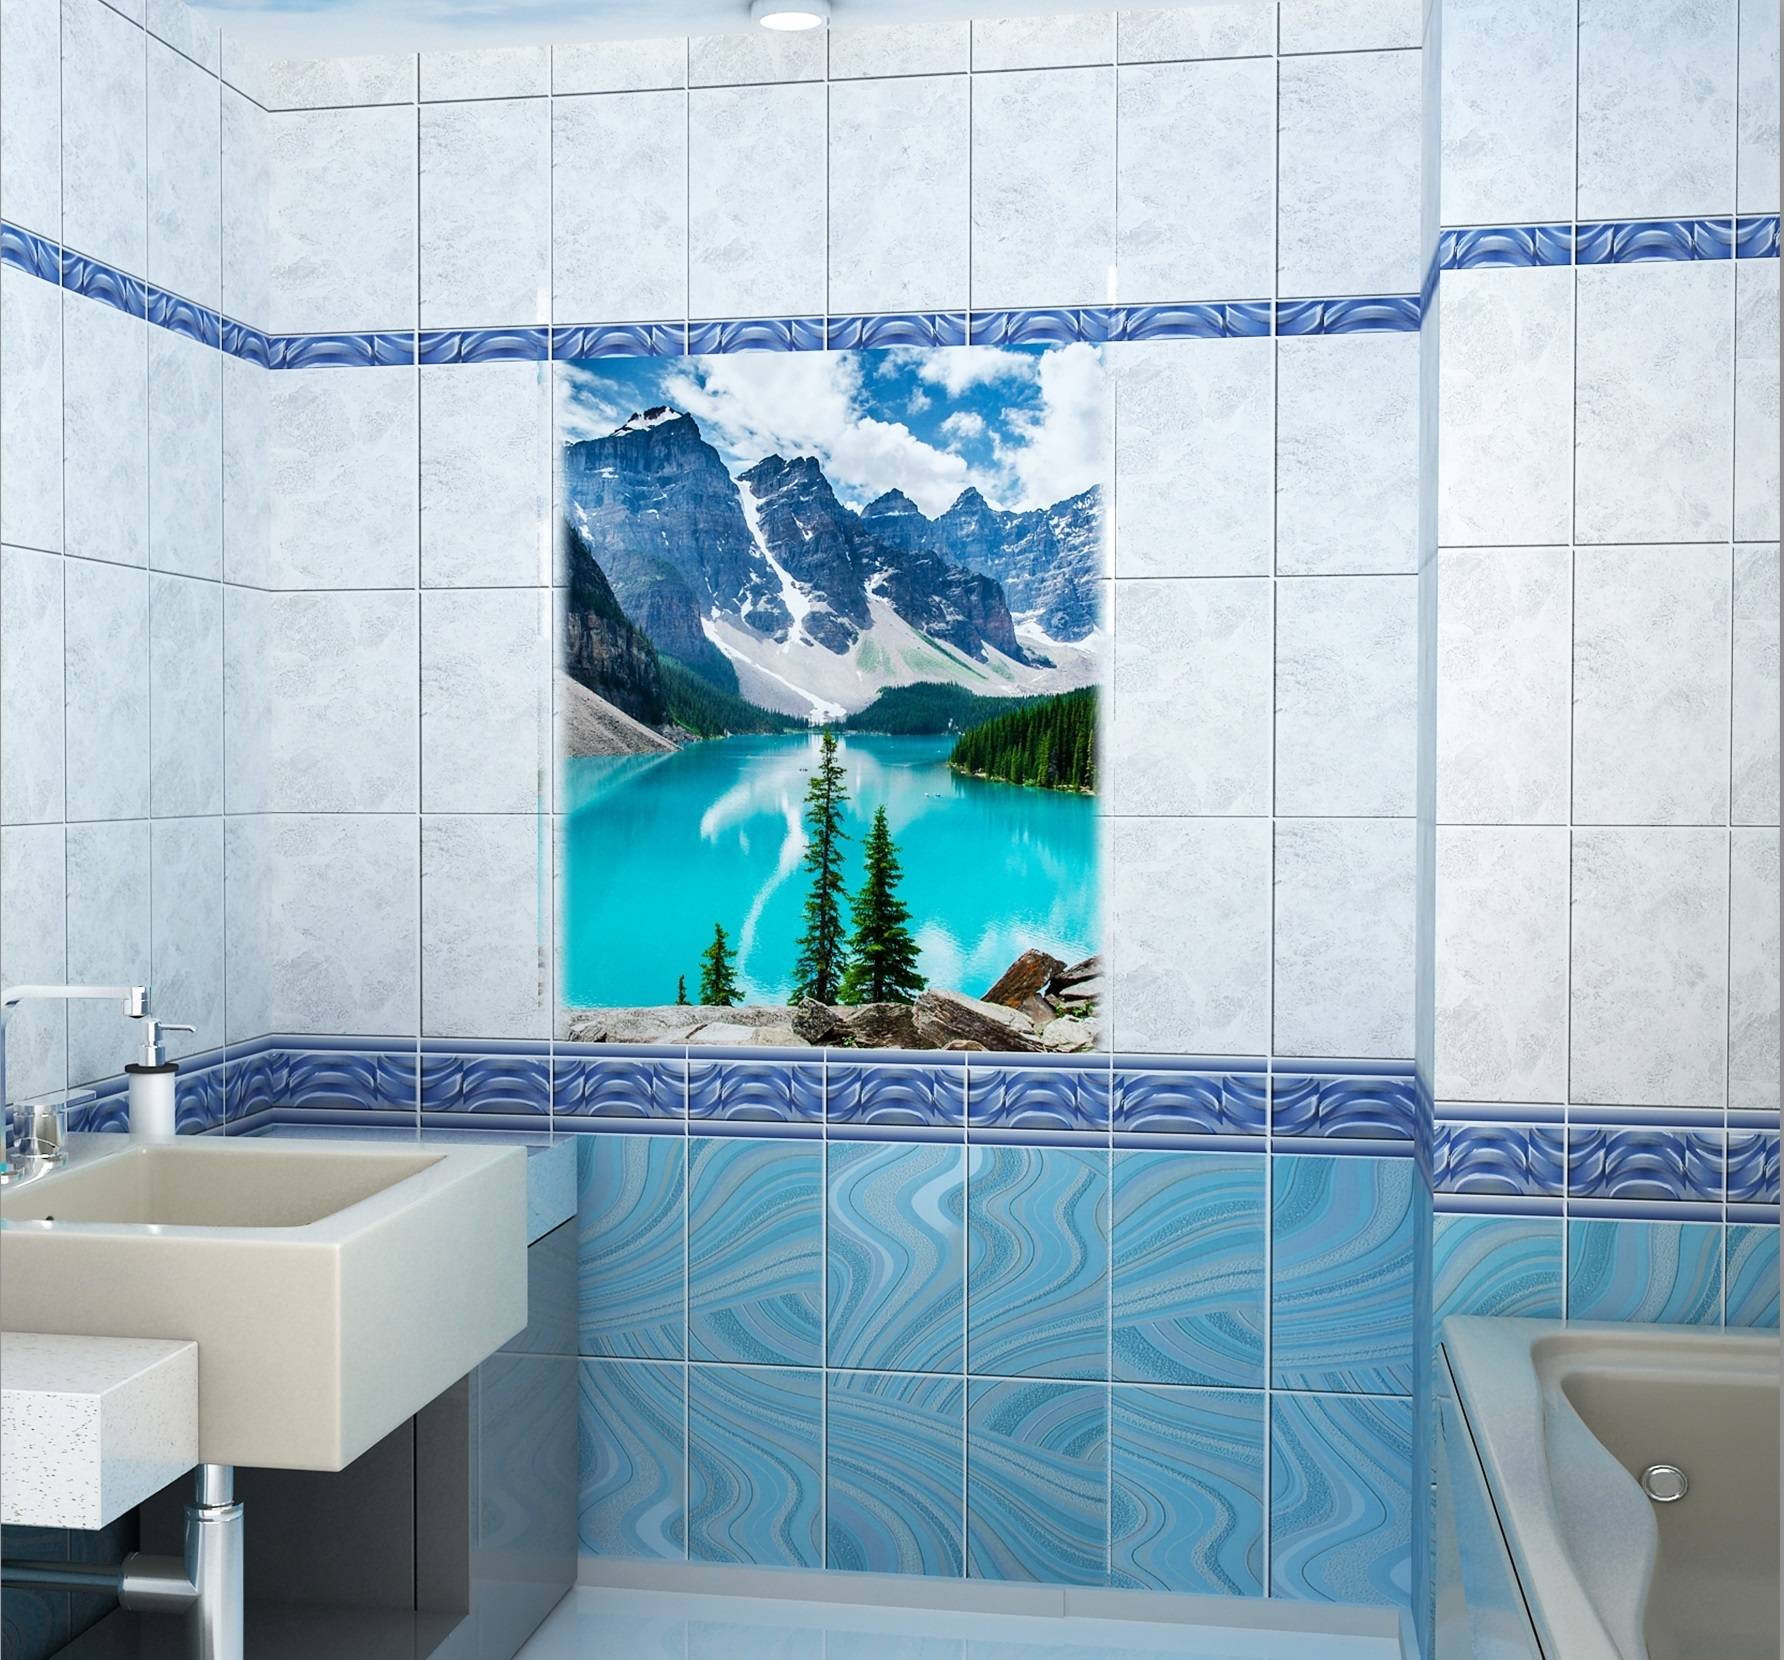 Пластиковые панели с 3D-рисунком в дизайне интерьера ванной